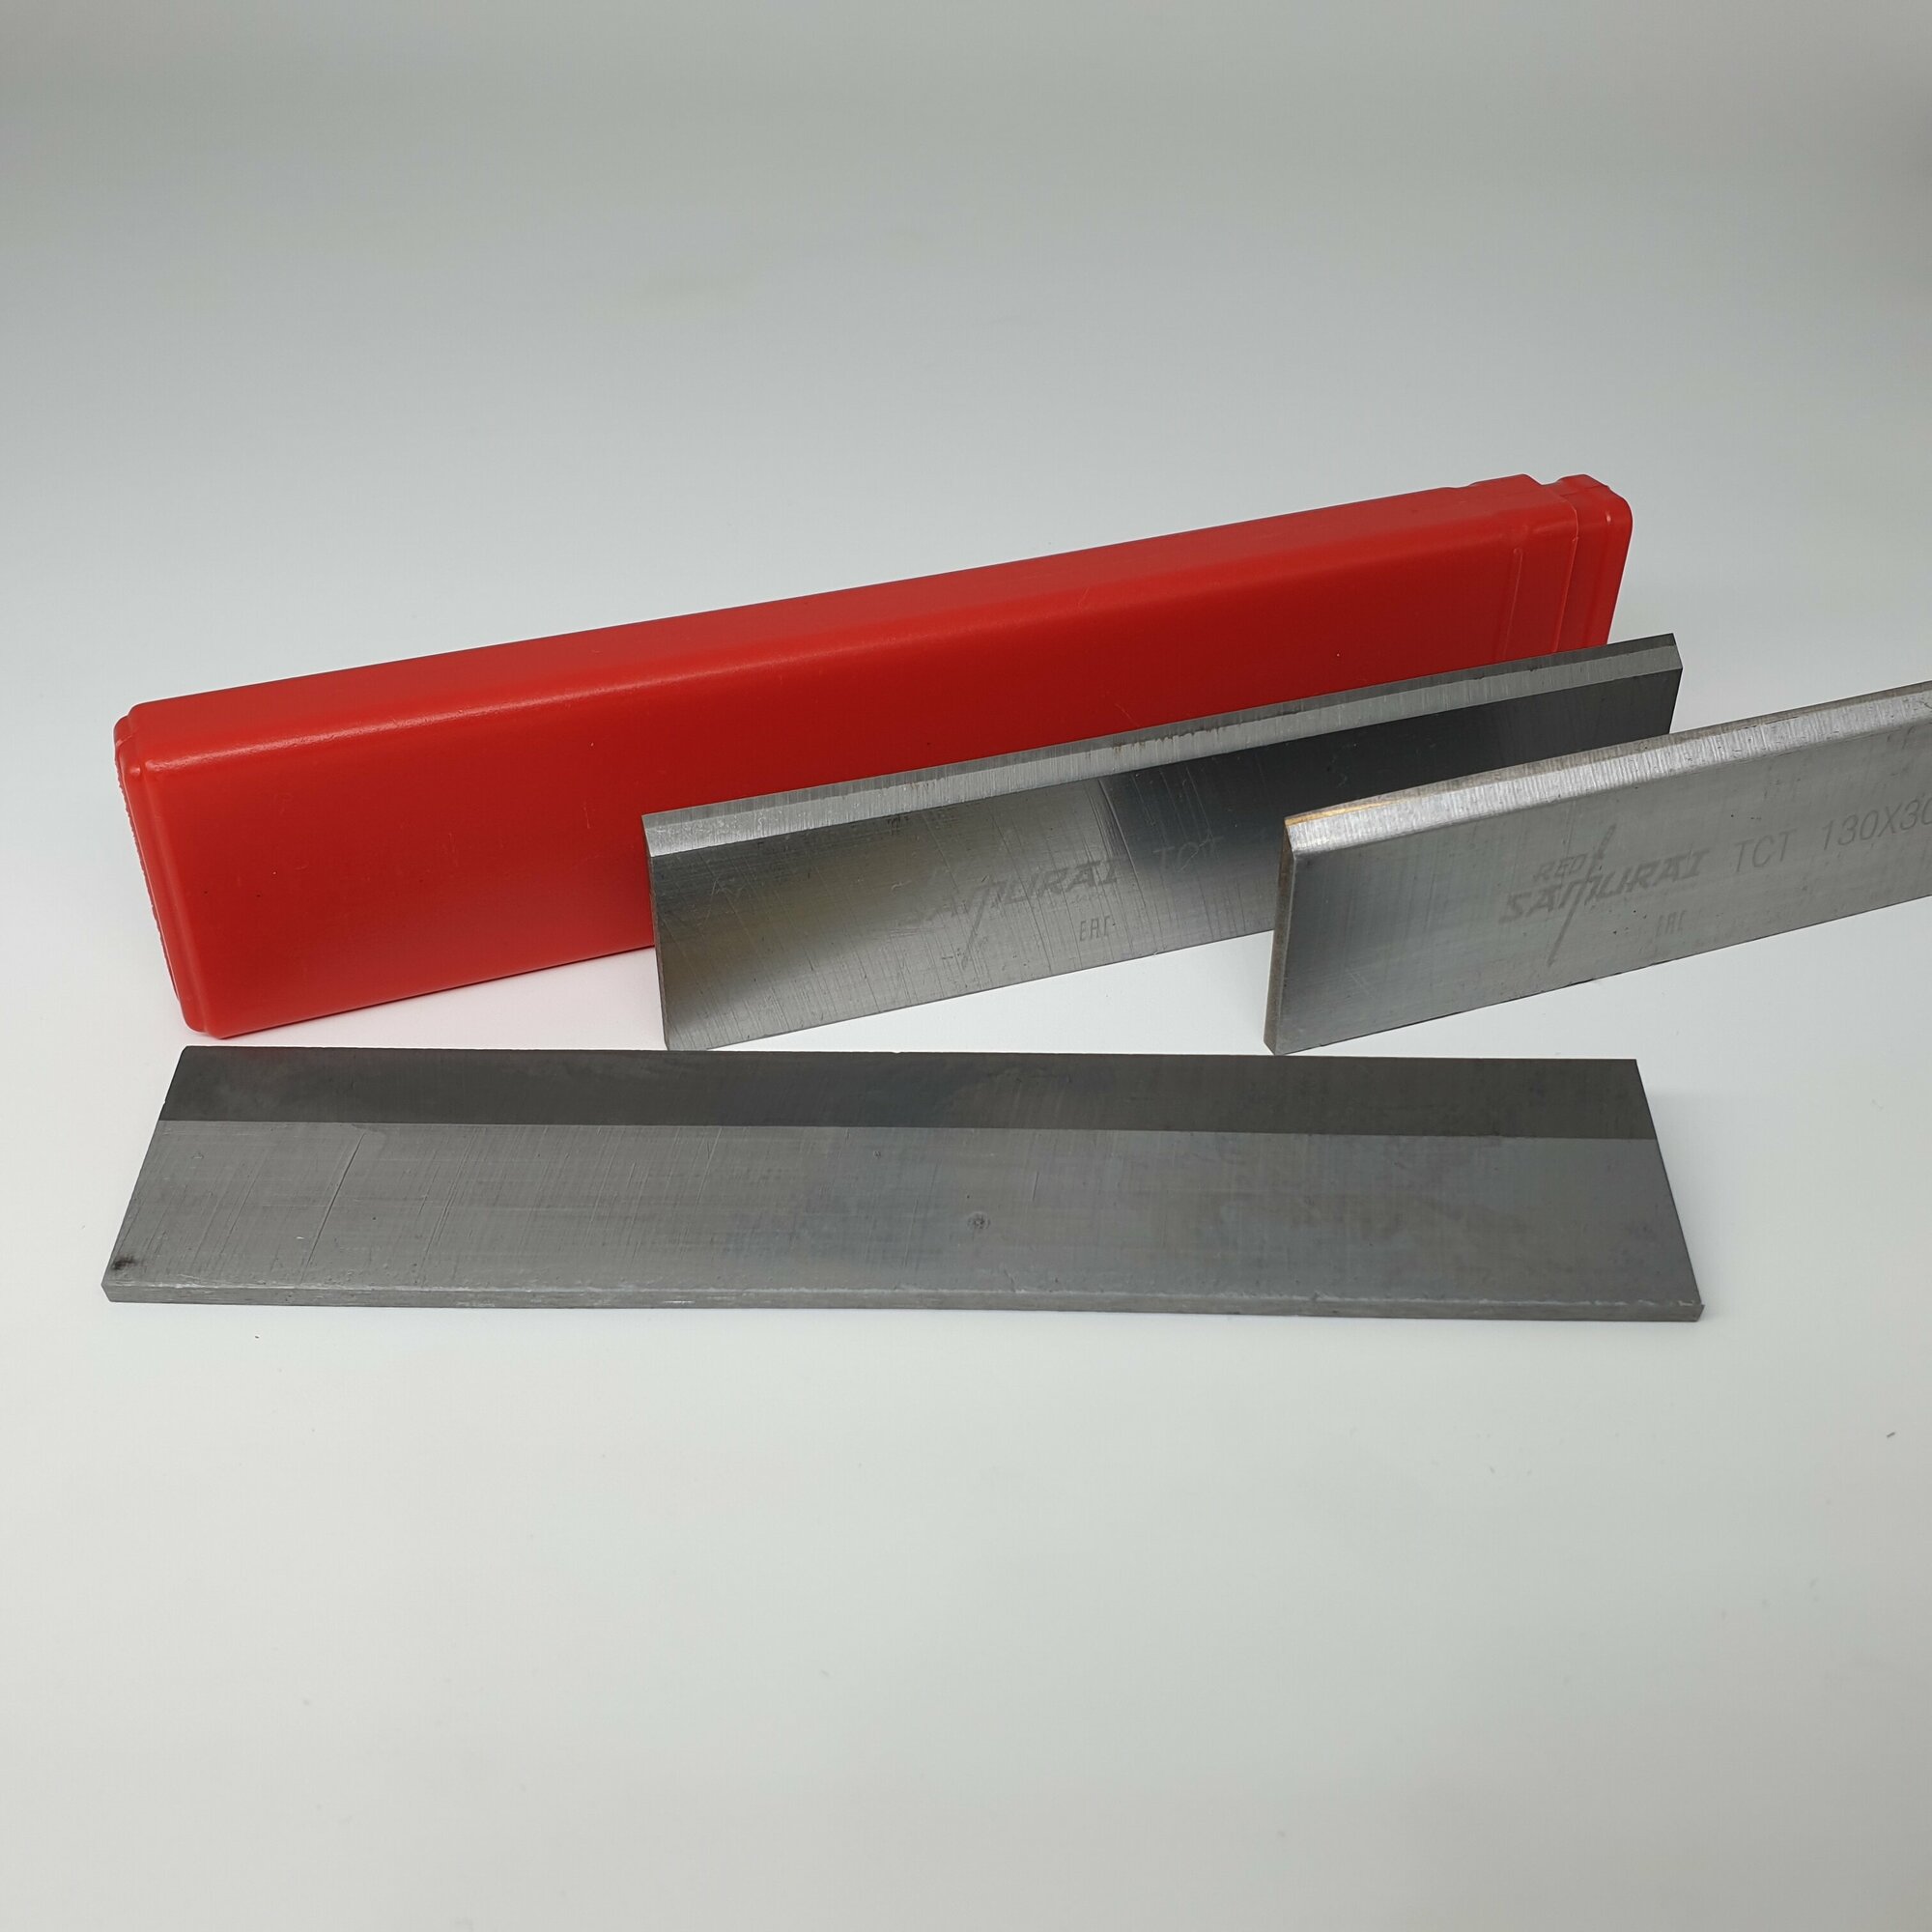 Строгальный нож с твердосплавной напайкой TCT 230x30x3 мм RED SAMURAI